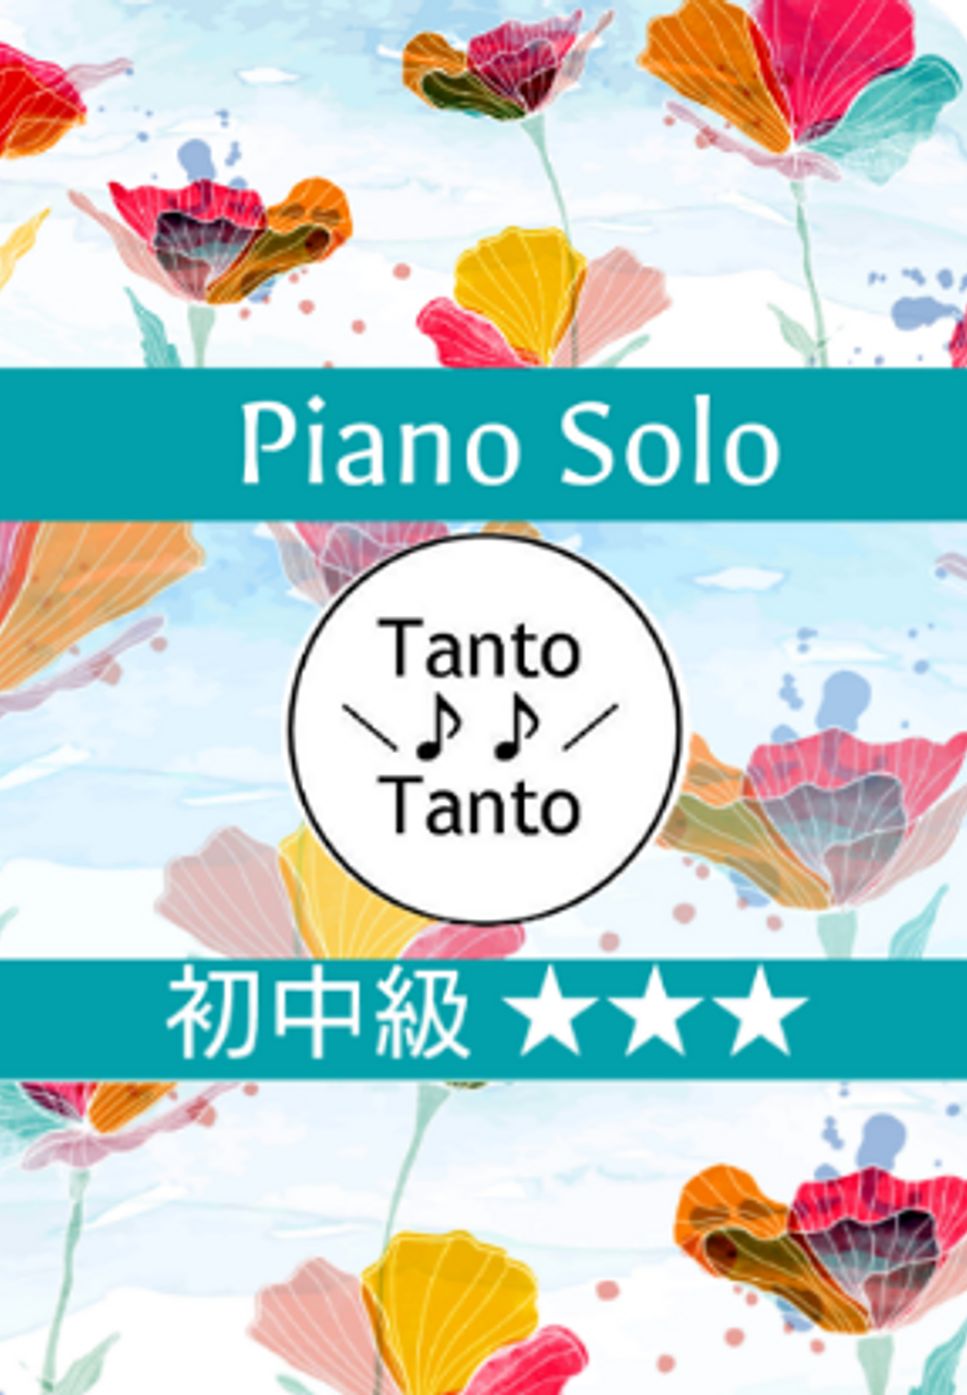 ジョン デンバー - TAKE ME HOME COUNTRY ROADS カントリーロード (耳をすませば 初中級 Piano Solo in F) by Tanto Tanto